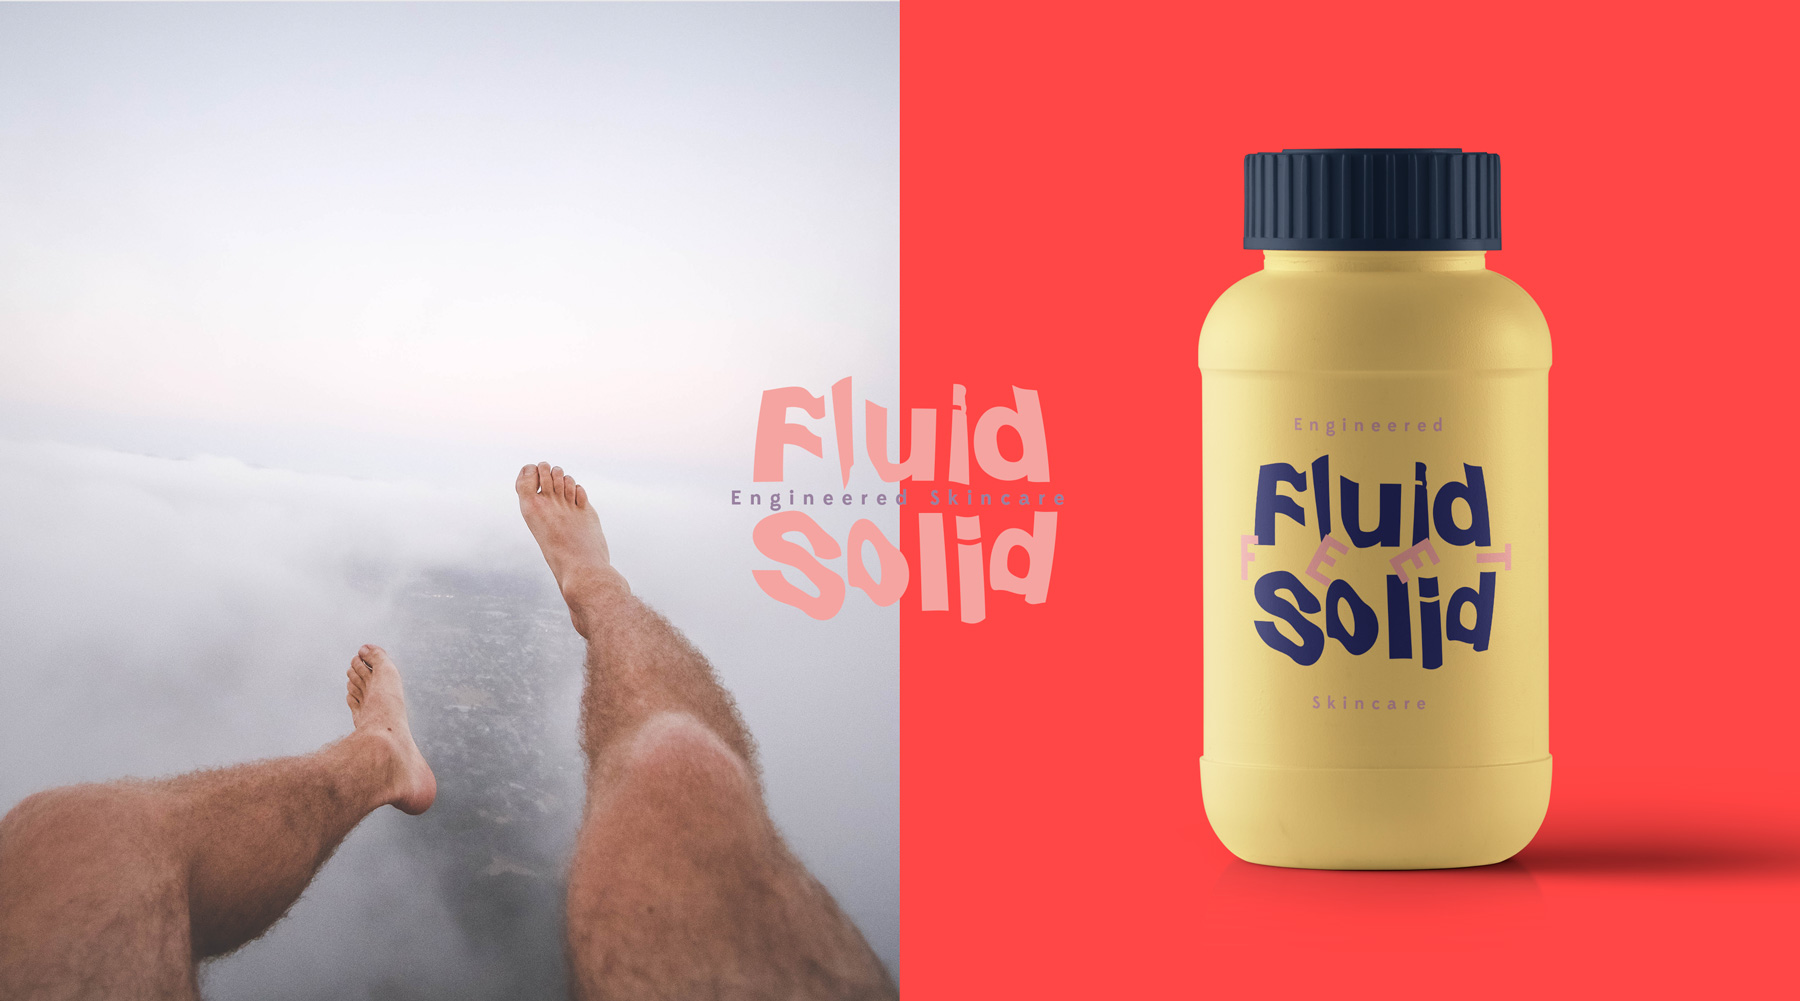 Fluid Solid Identity CI designed by Tobias Heumann